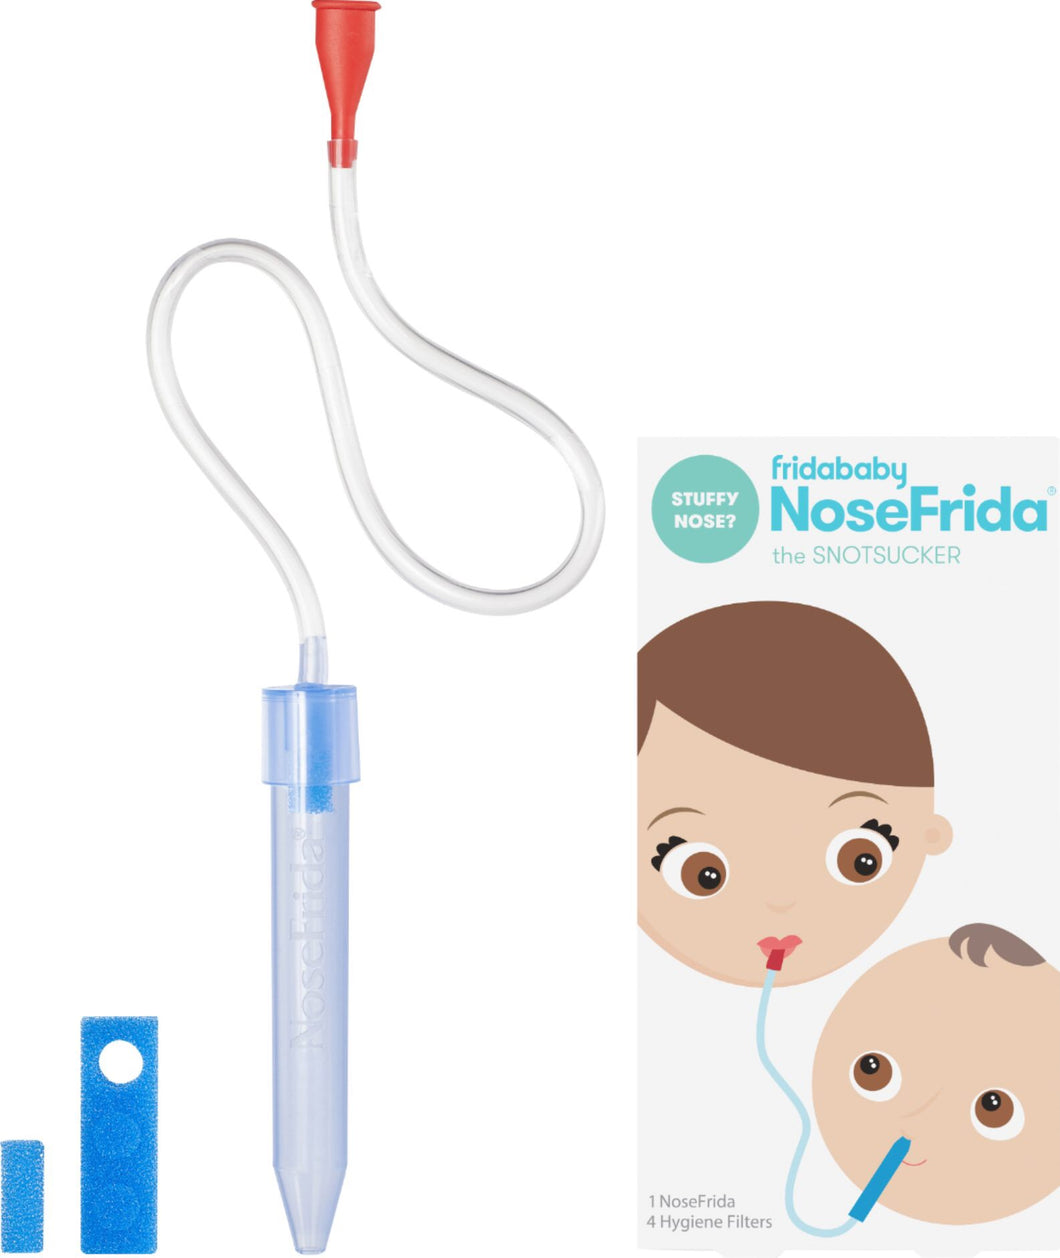 NoseFrida Review 2021 – How to Use a NoseFrida